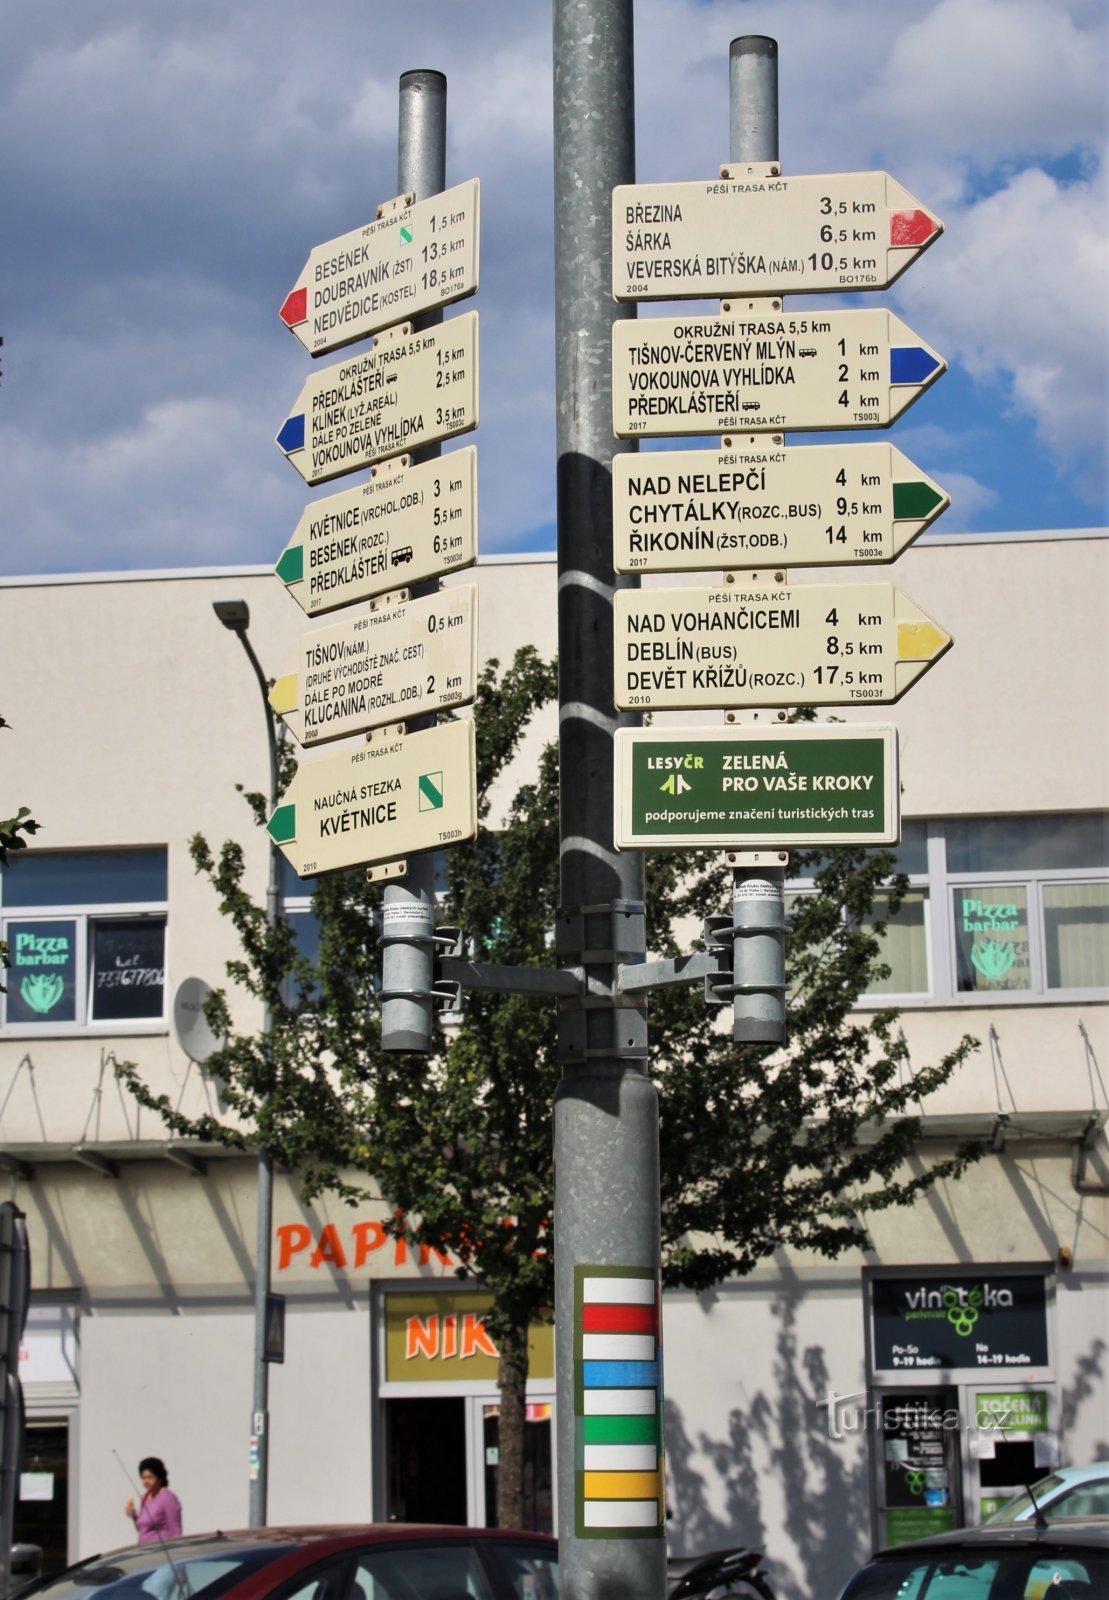 Frente al edificio de la estación hay una guía turística de doble cara en los cuatro colores.